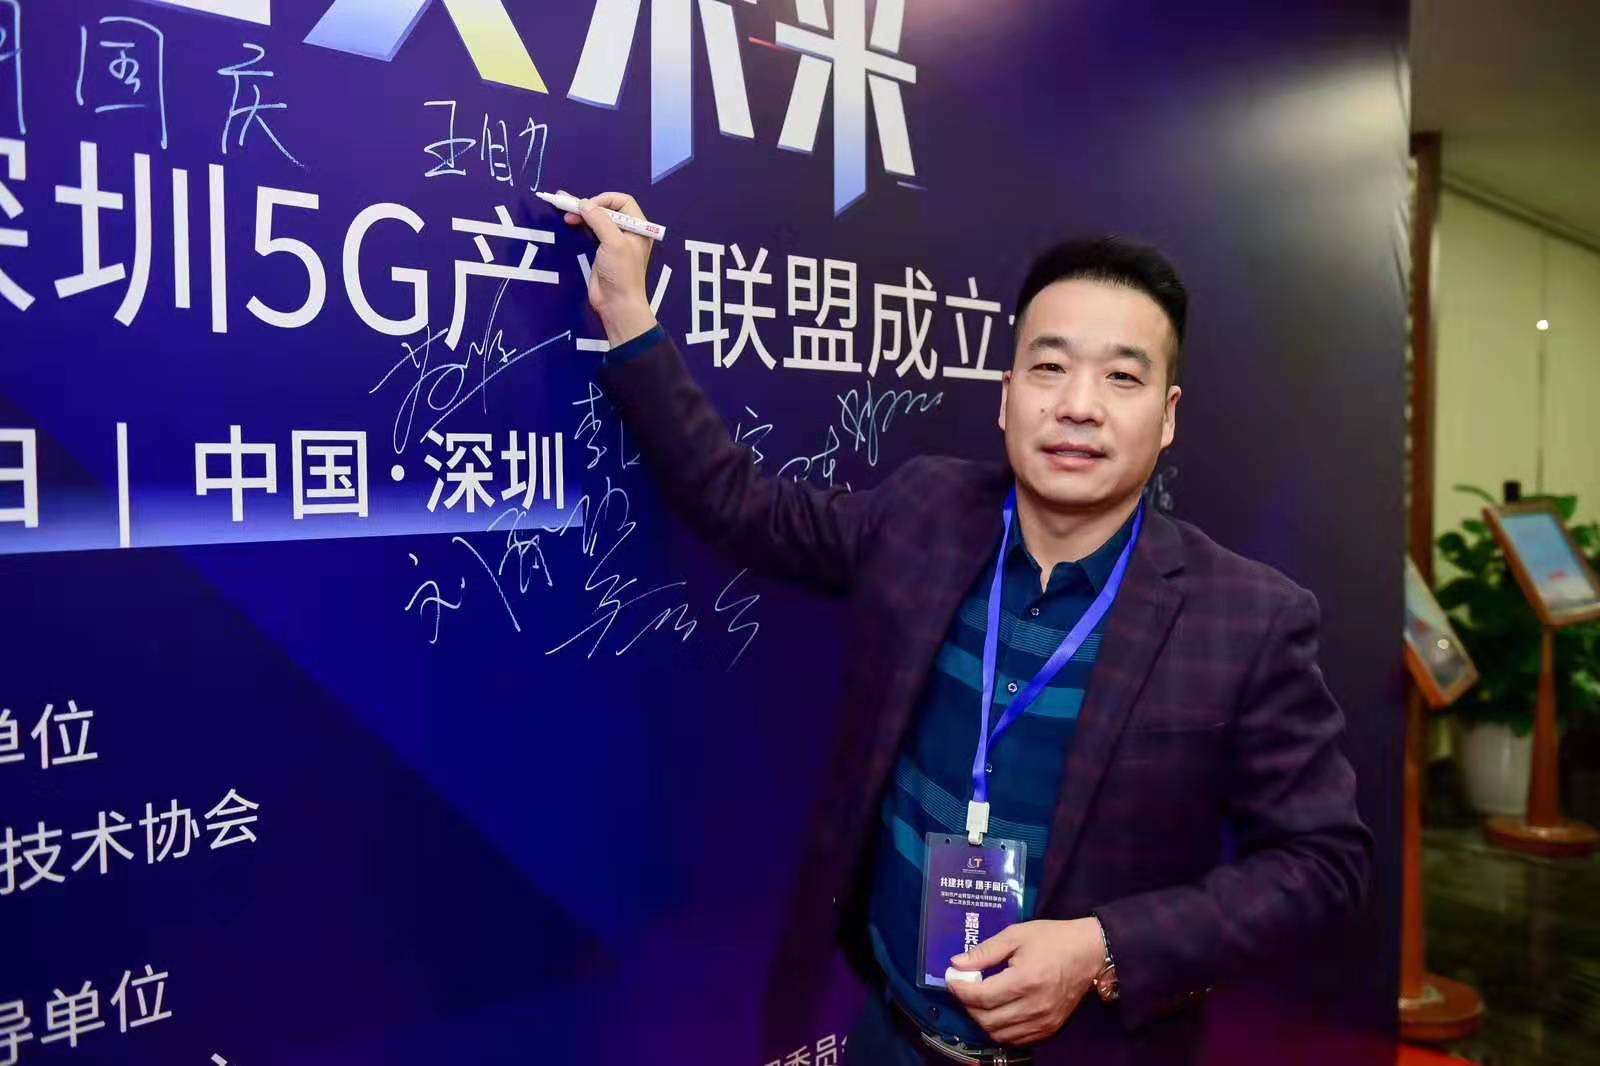 泰燃智能祝贺首届5G高峰论坛暨深圳5G产业联盟成立大会胜利召开